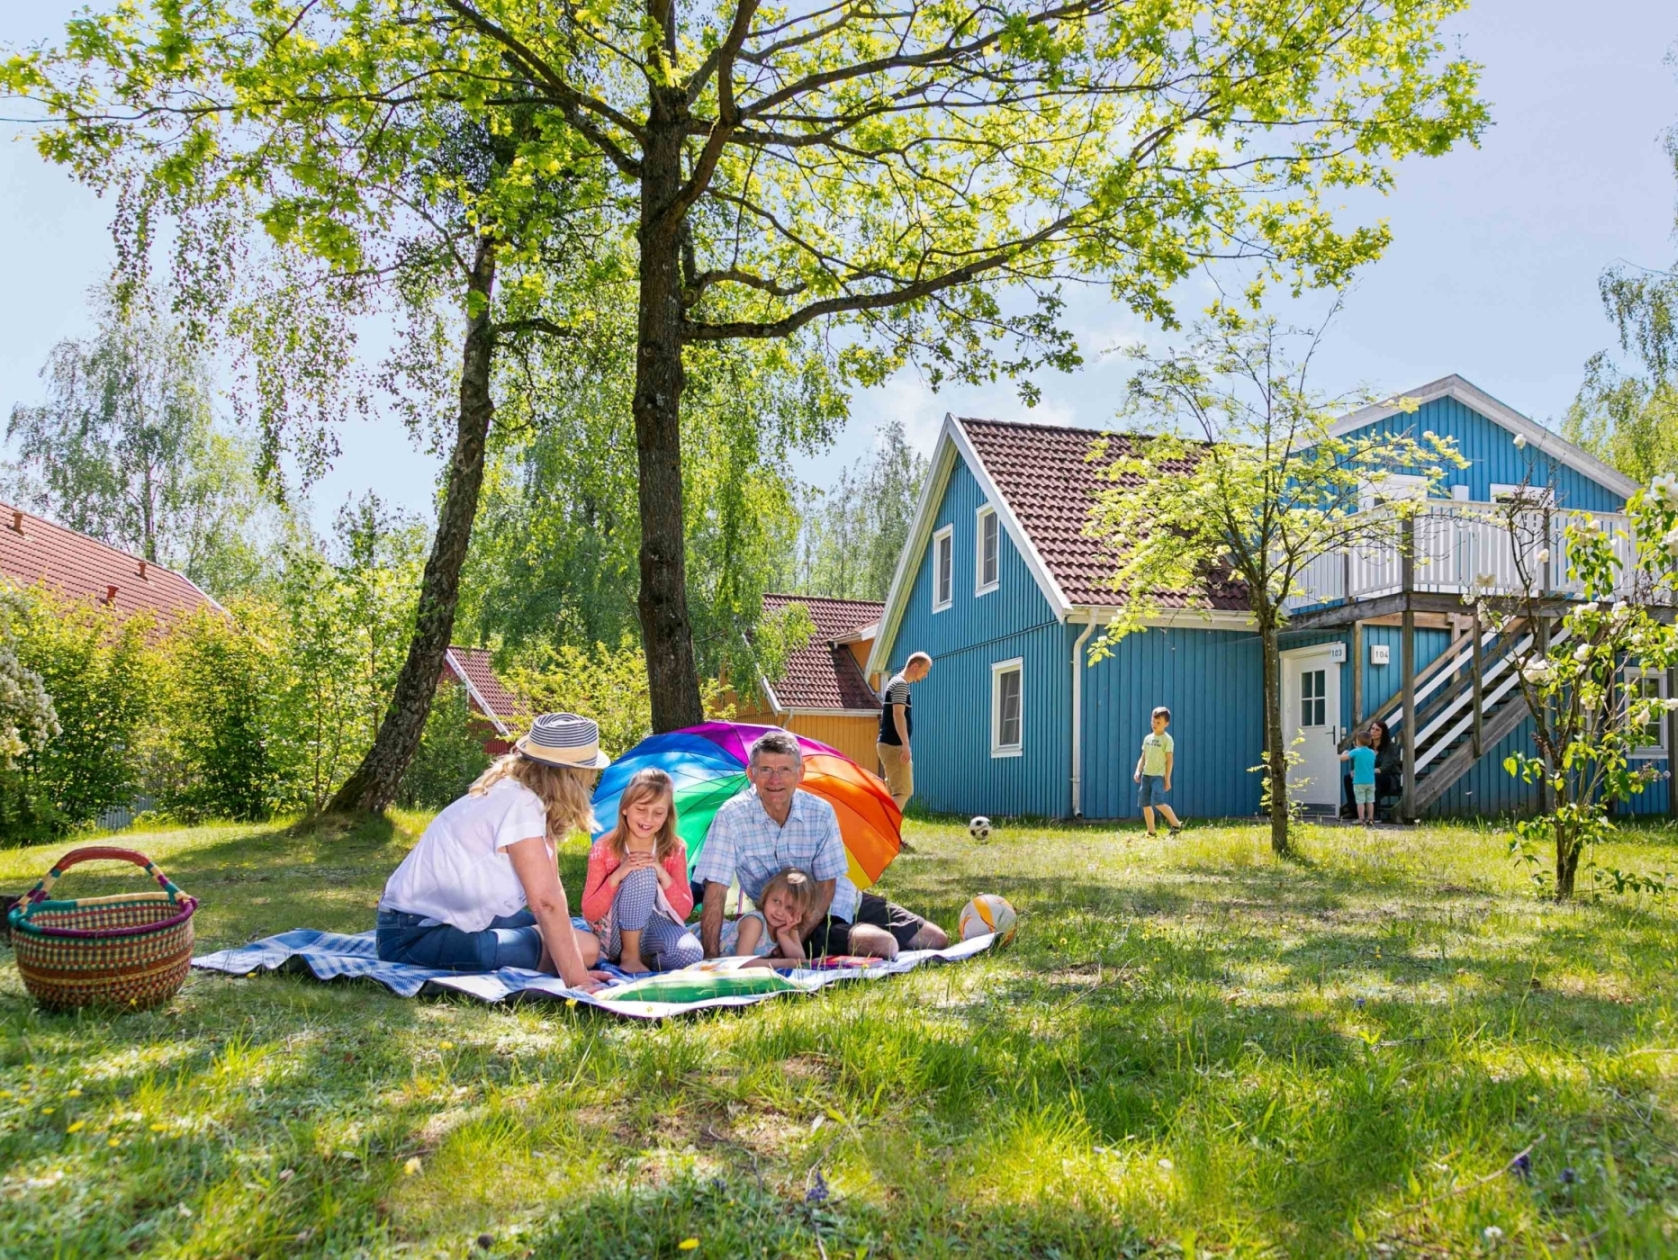 Farbenfrohe Holzhäusern laden zum Urlaub machen ein. | Foto: Müritzparadies GmbH/Anne Steffen